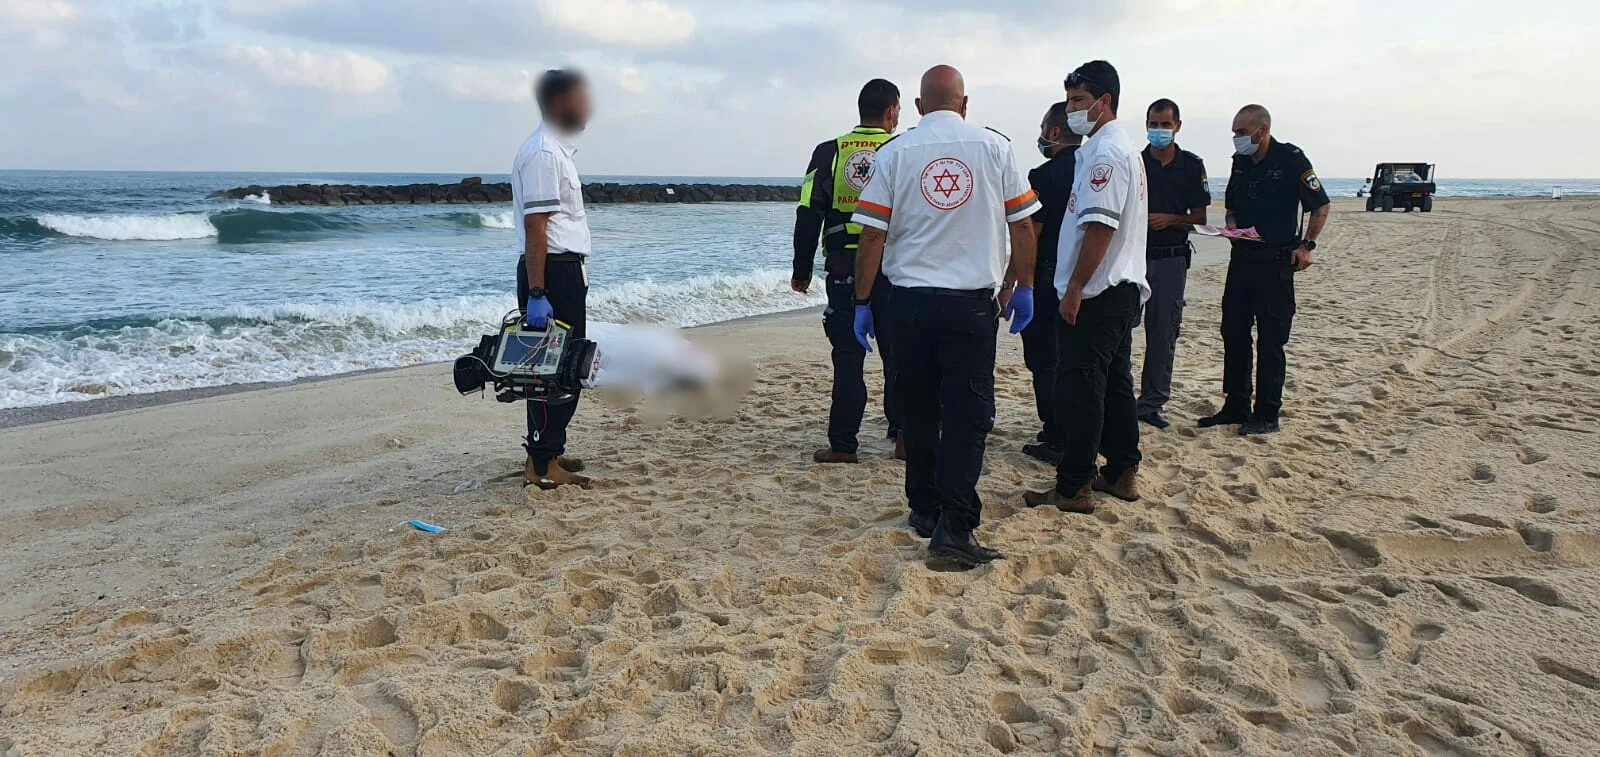 גופת גבר כבן 70 נמצאה מול חוף בר כוכבא באשקלון